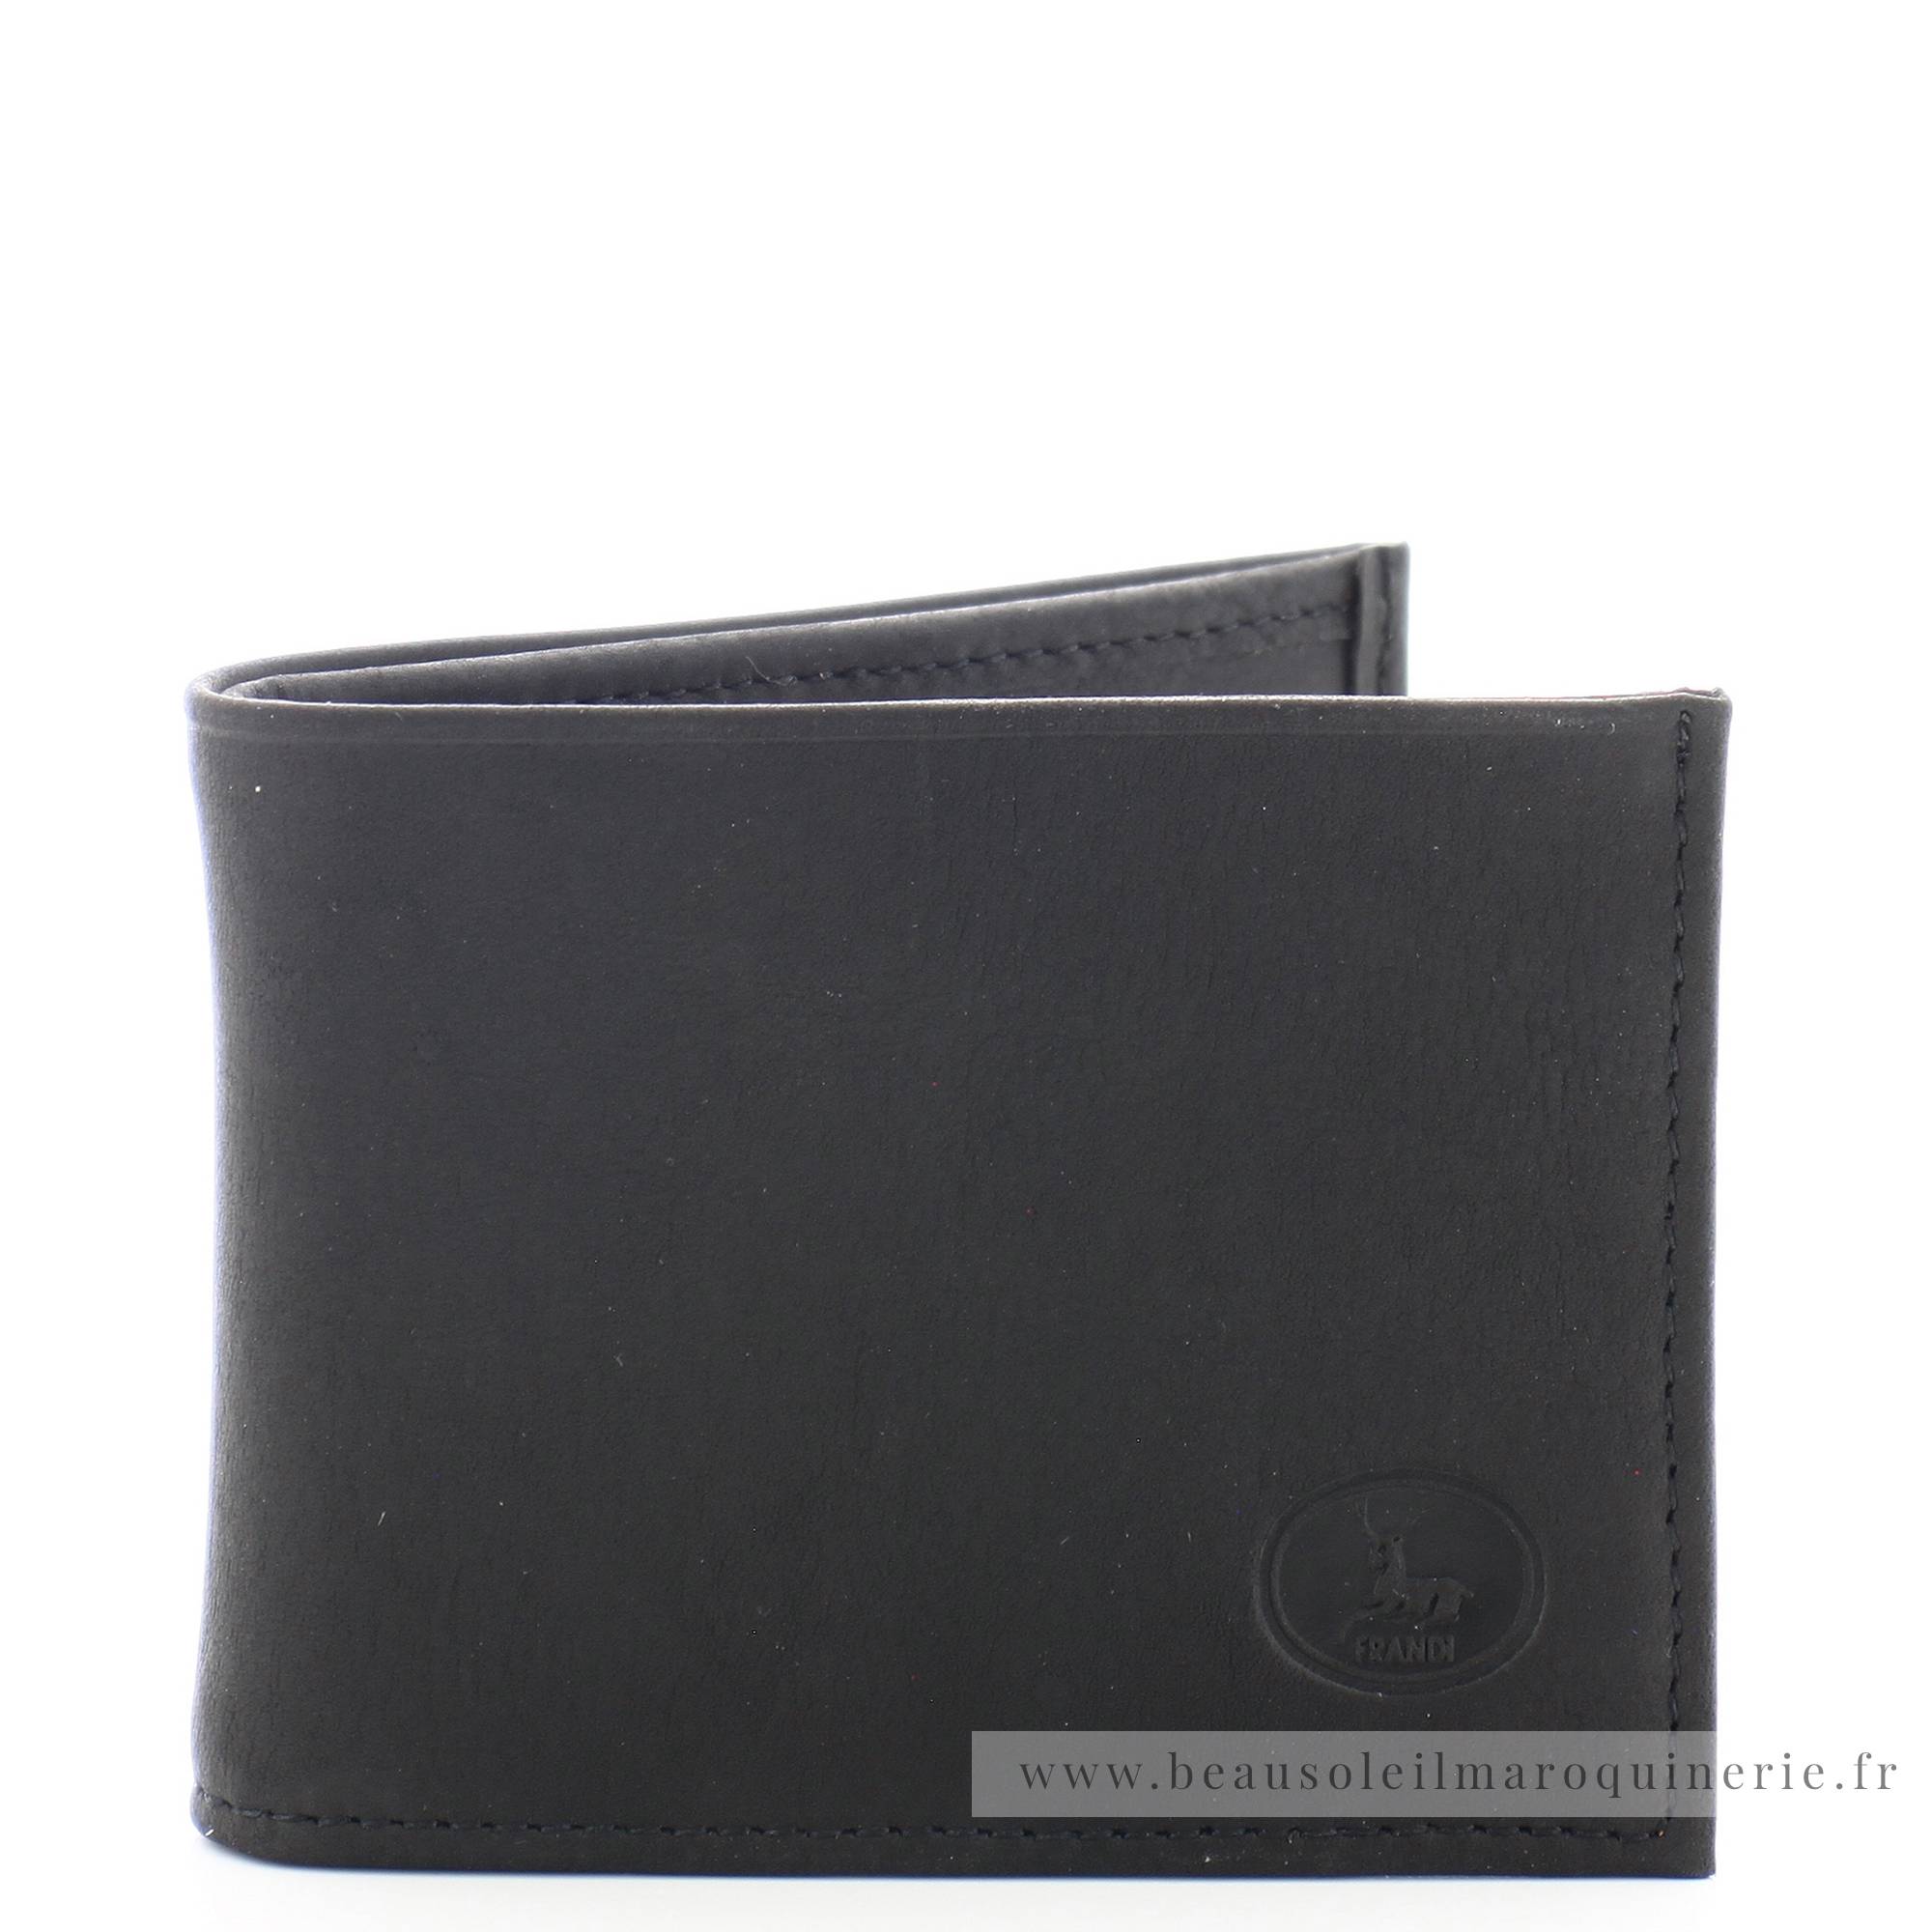 Mini Portefeuille Frandi Authentique 938.05NOIR, couleur noir, vue de face